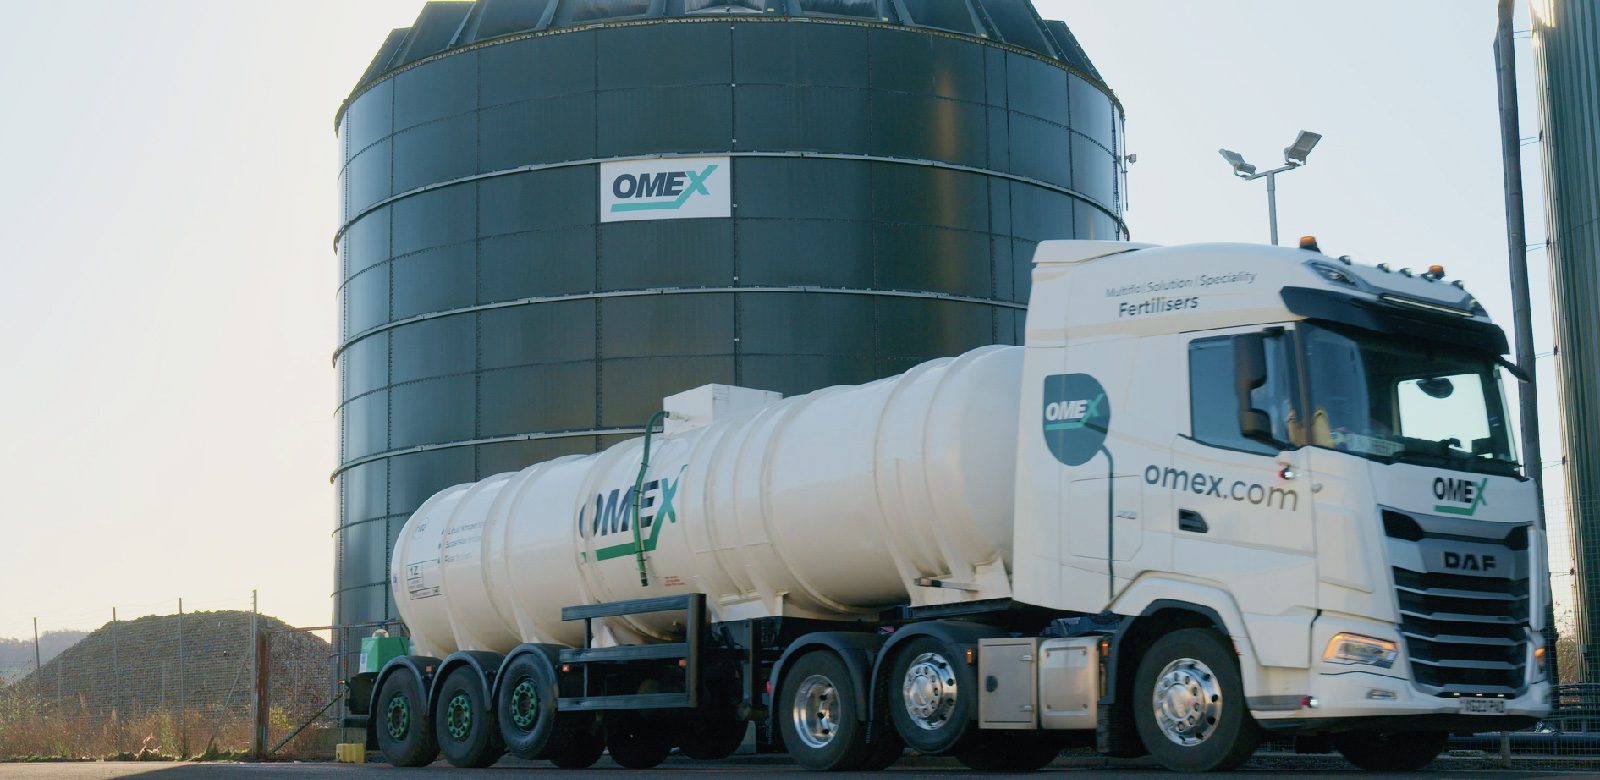 OMEX tanker delivering liquid fertiliser